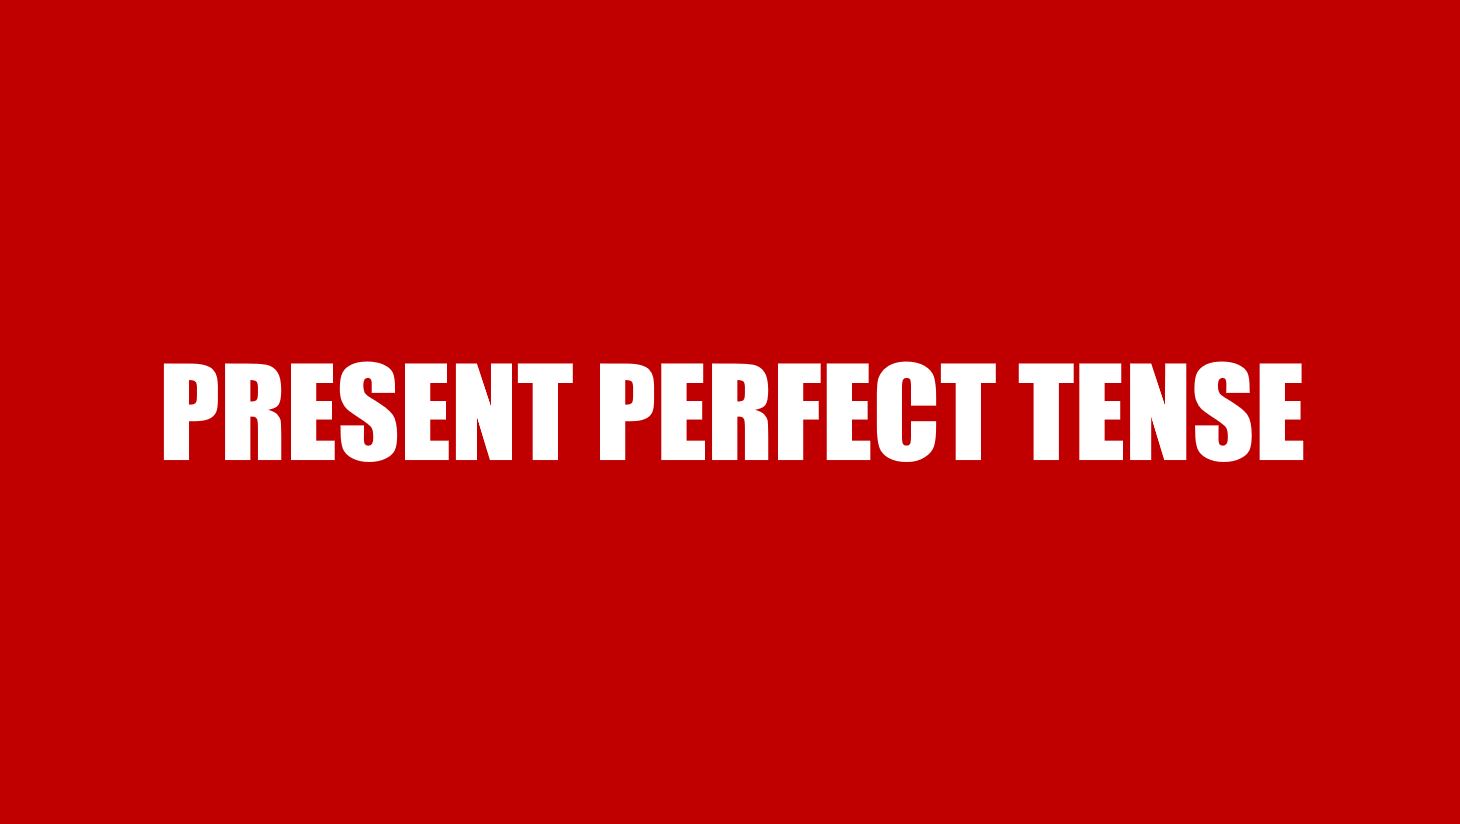 Prensent Perfect Tense - Thì hiện tại hoàn thành: Cấu trúc, cách dùng và bài tập